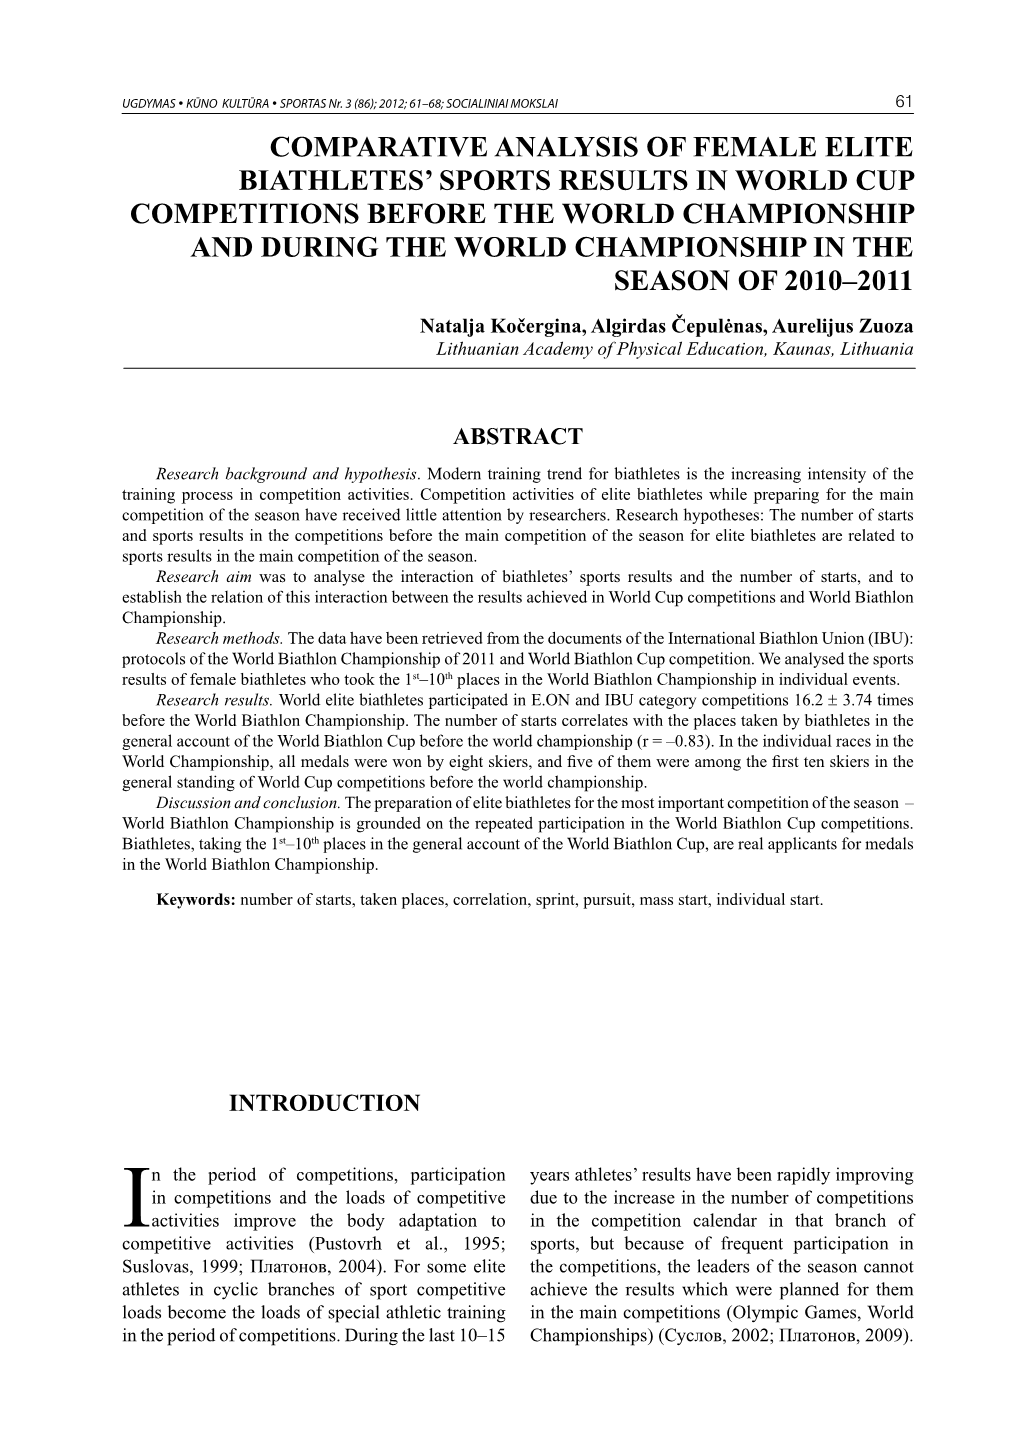 Comparative Analysis of Female Elite Biathletes